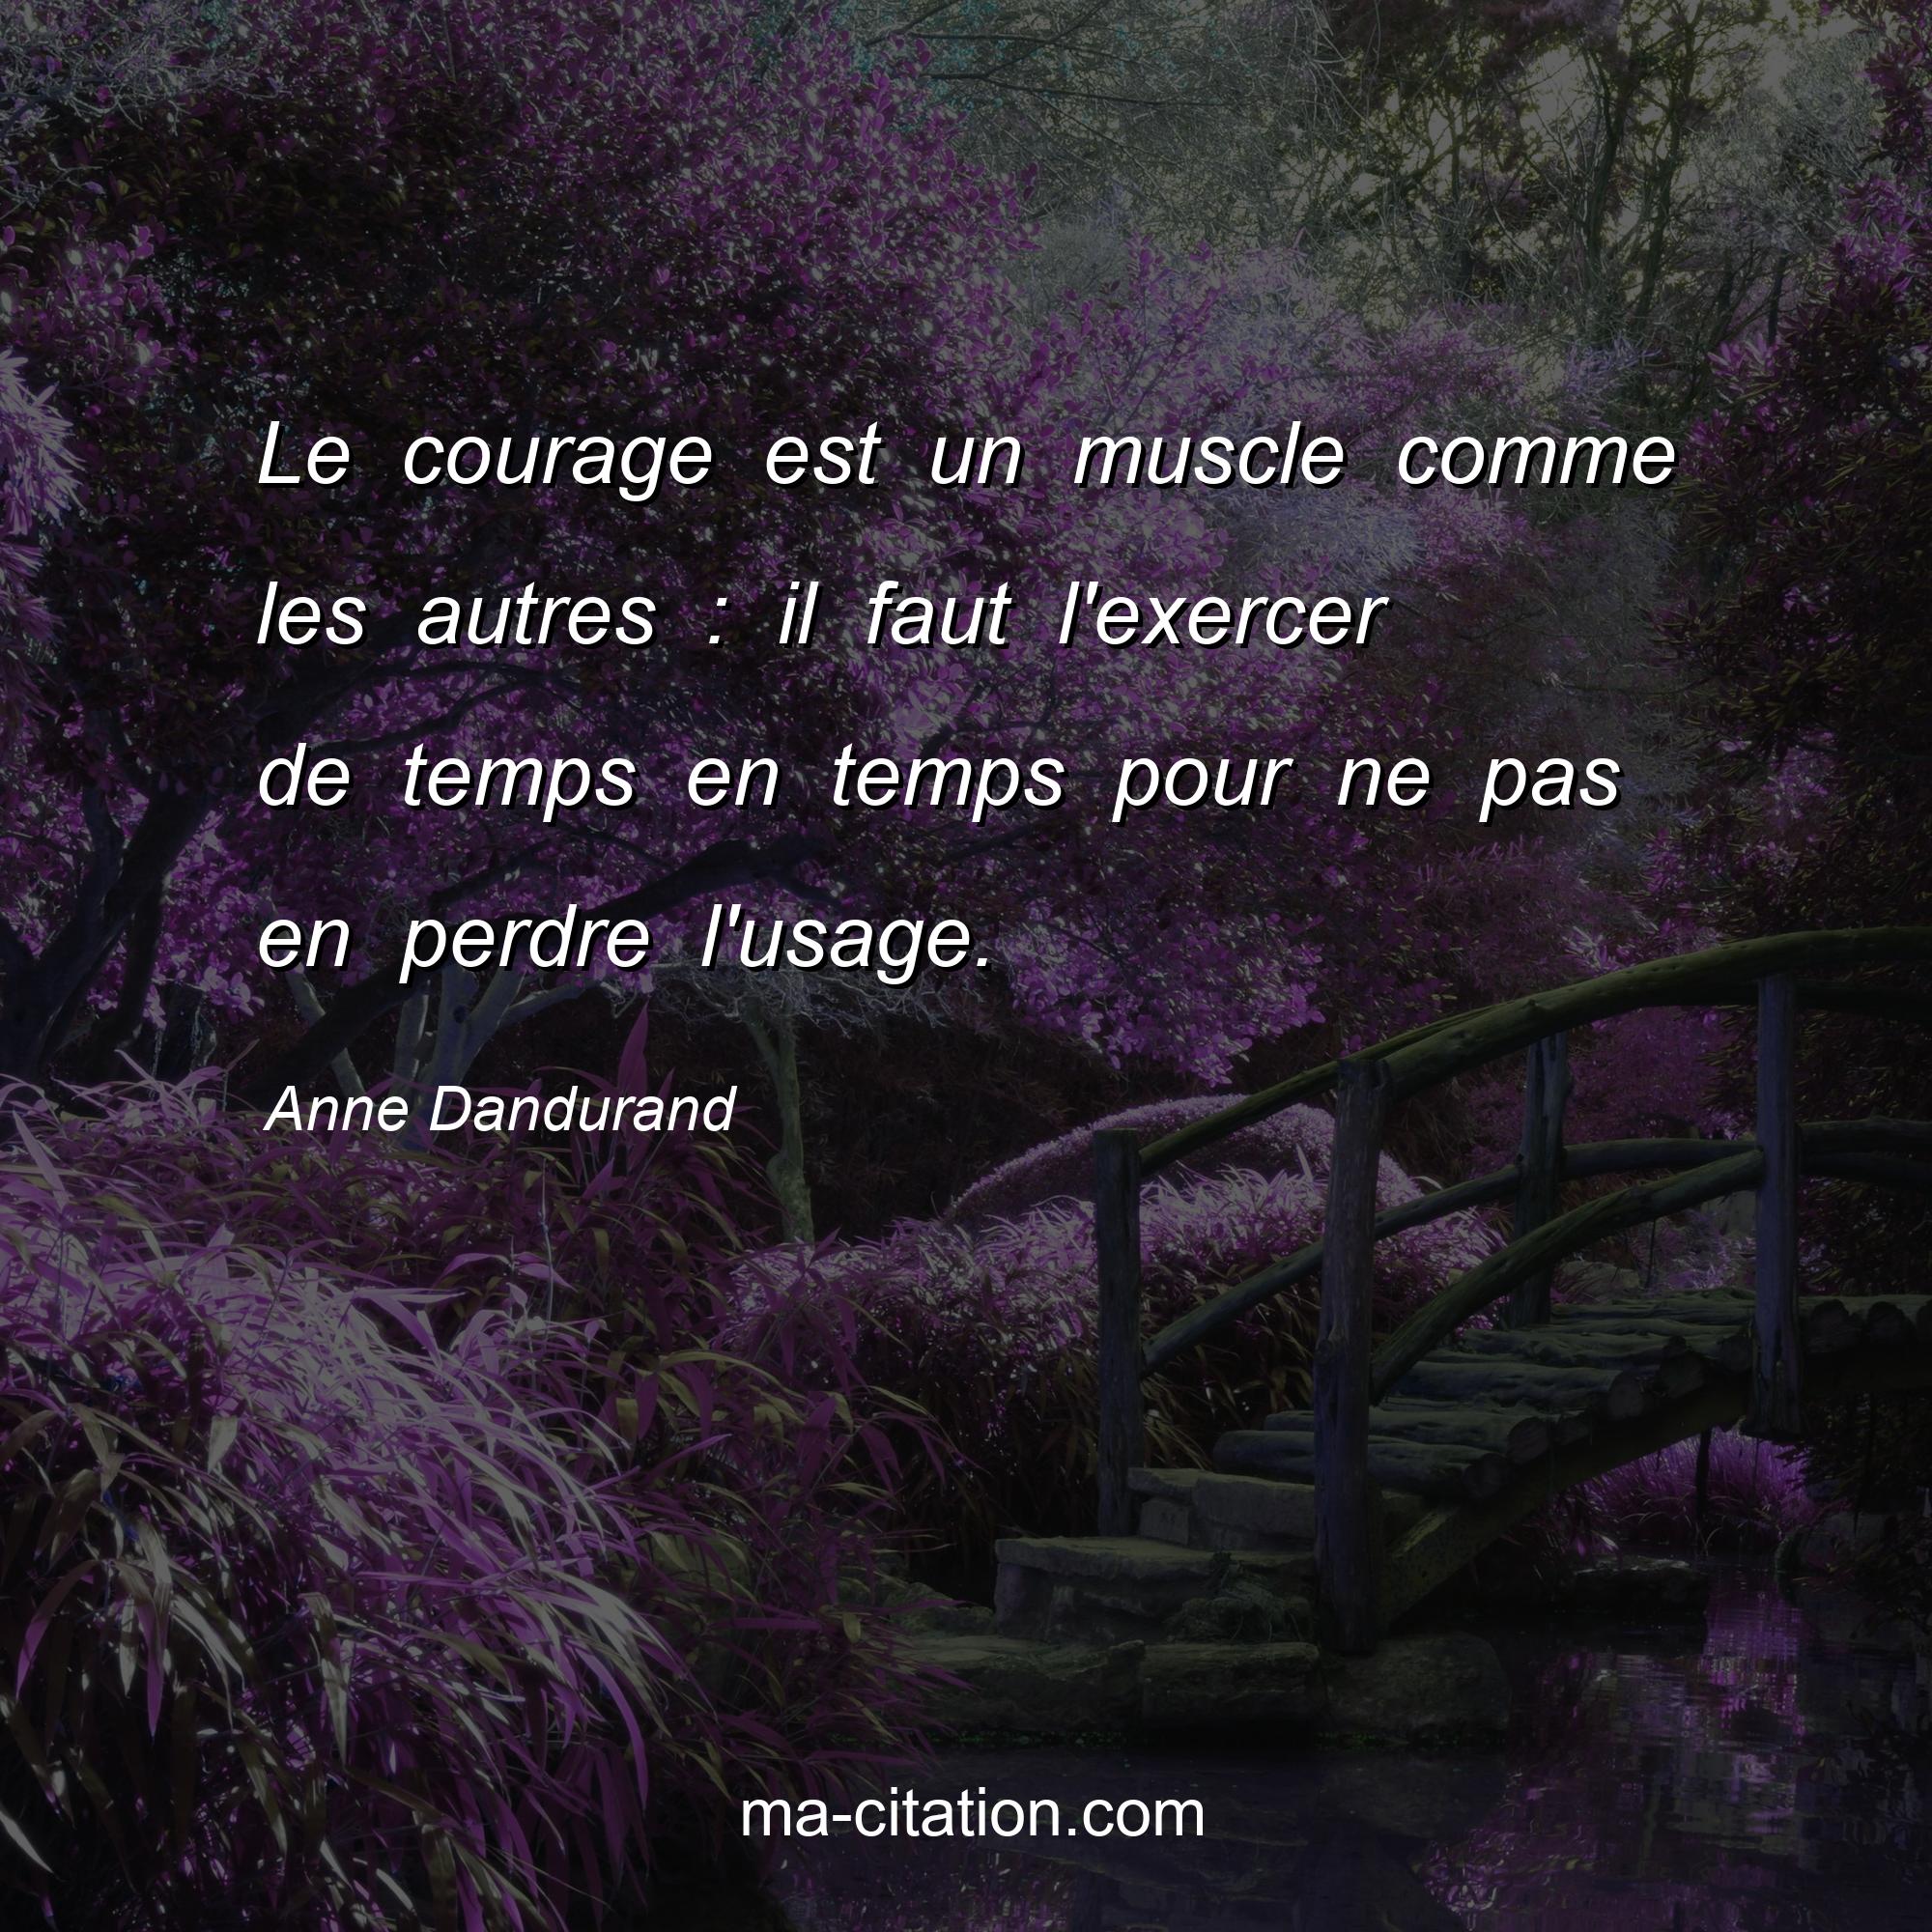 Anne Dandurand : Le courage est un muscle comme les autres : il faut l'exercer de temps en temps pour ne pas en perdre l'usage.